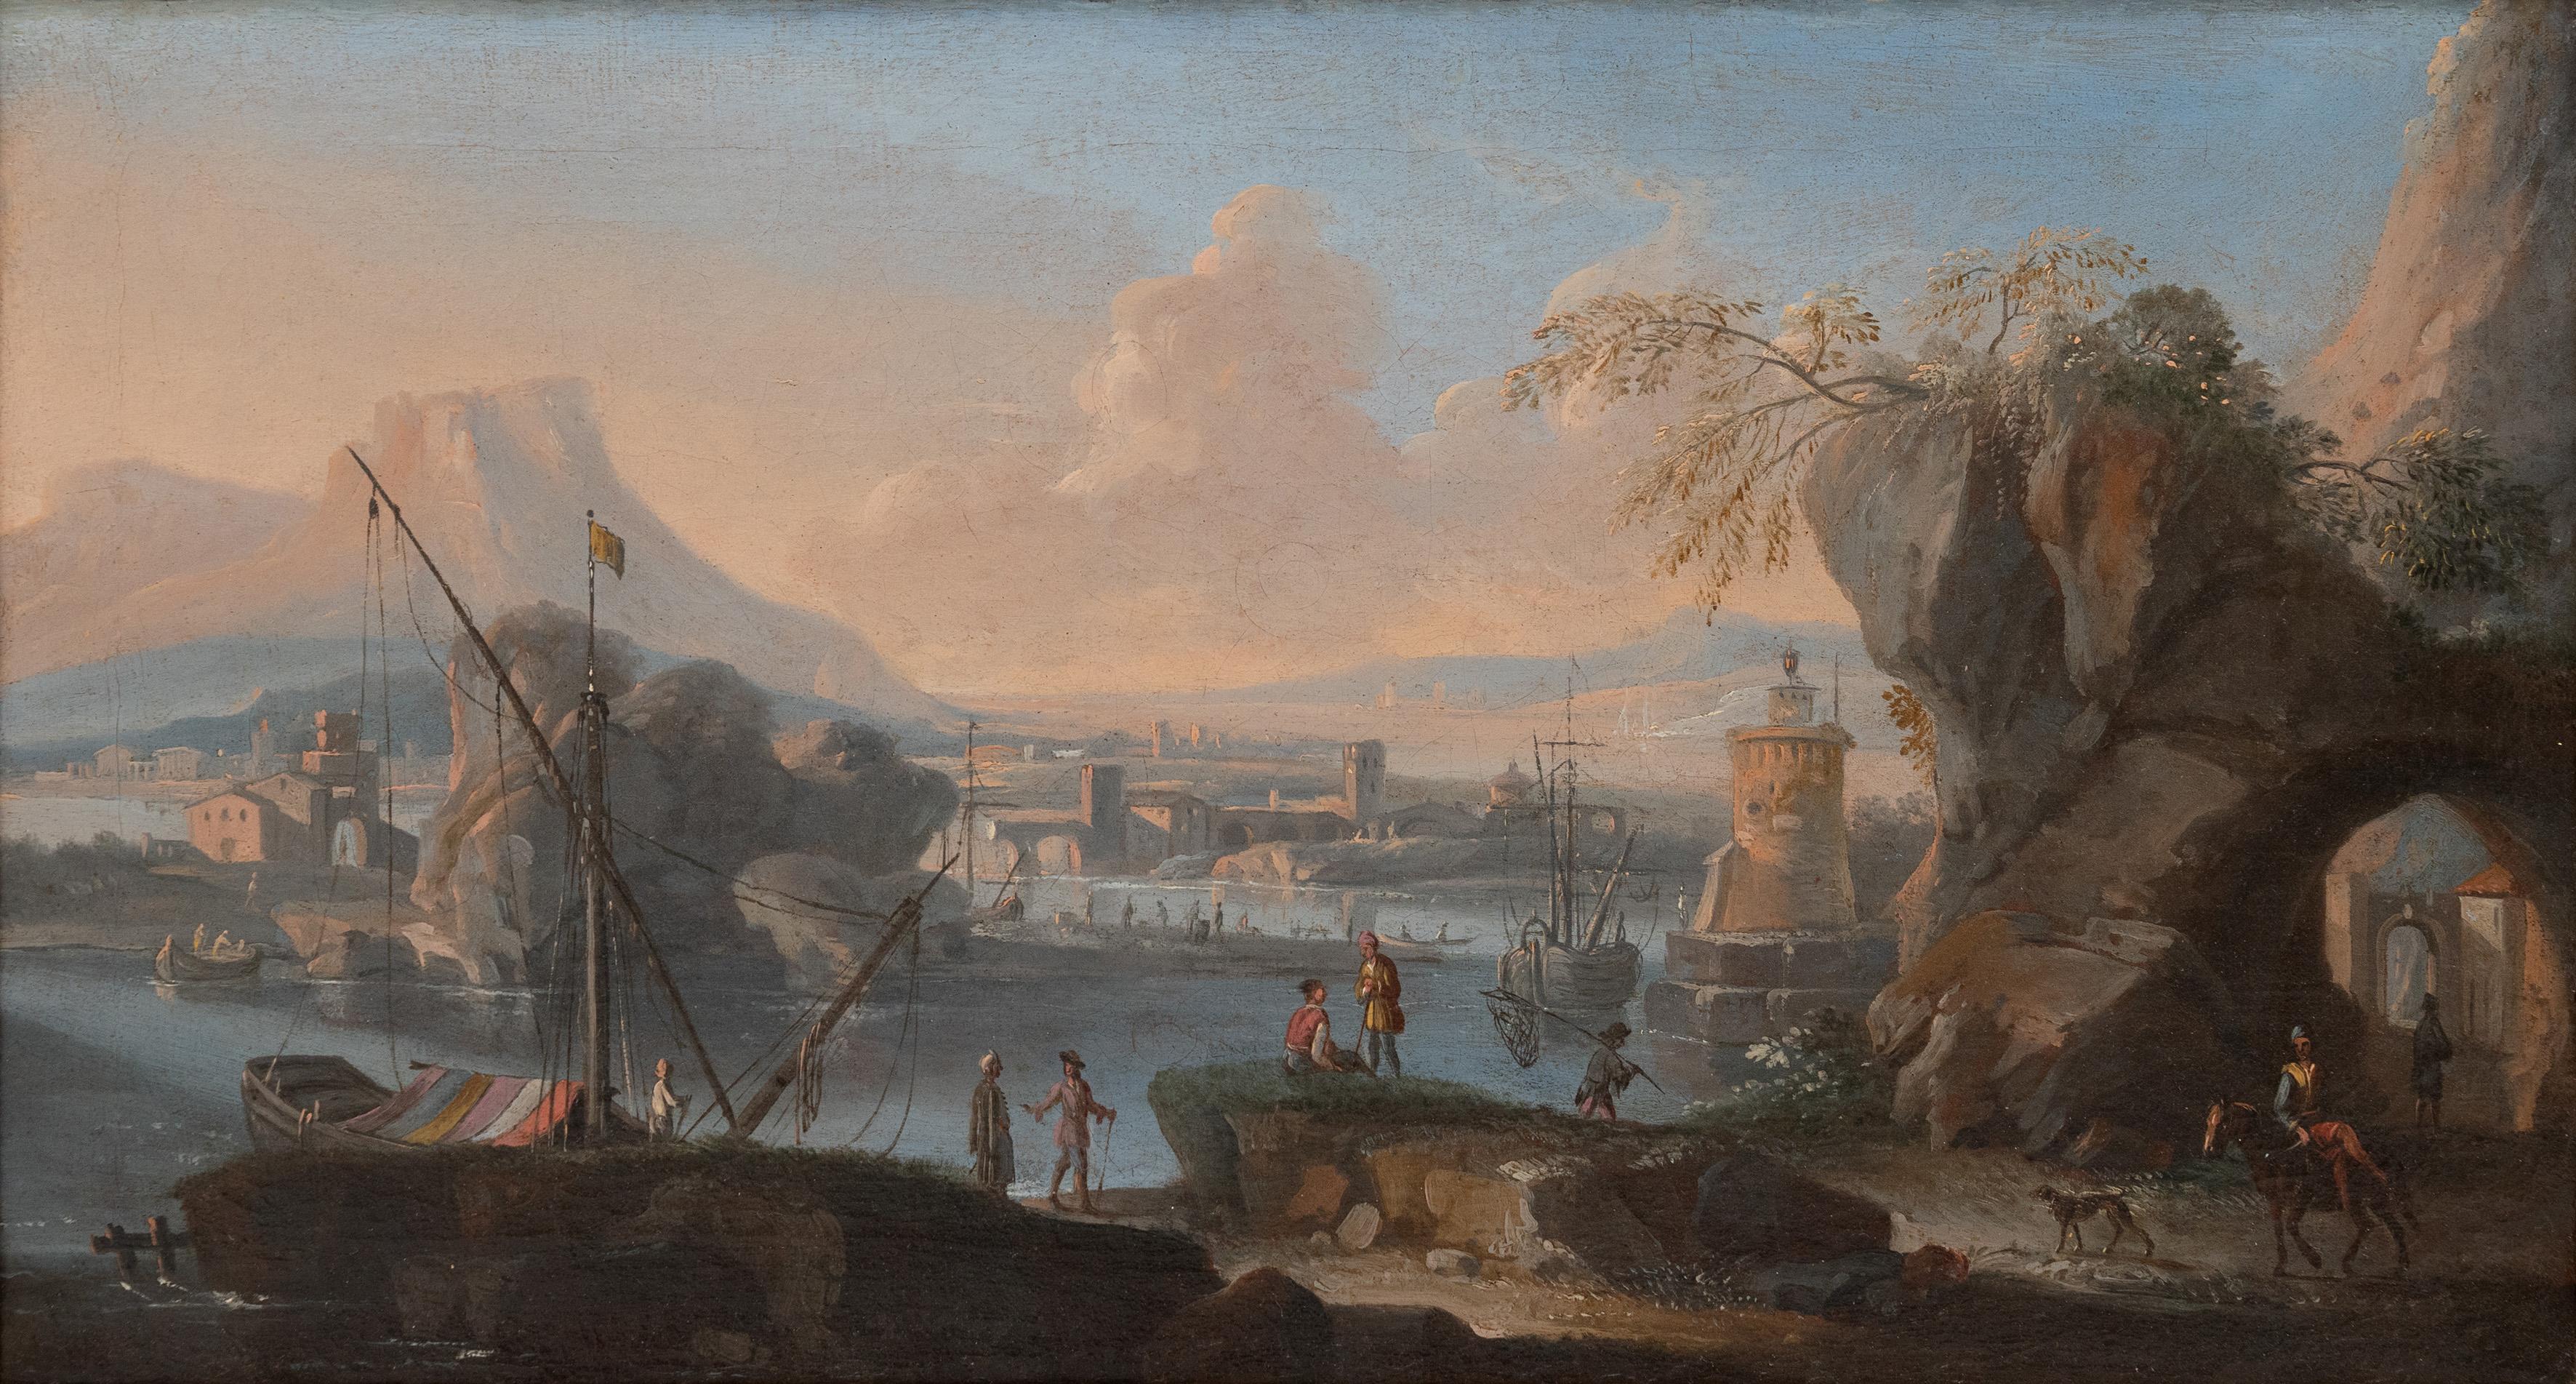 Landscape Painting Adriaen van der Cabel - Une scène portuaire méditerranéenne dans un paysage de Capriccio